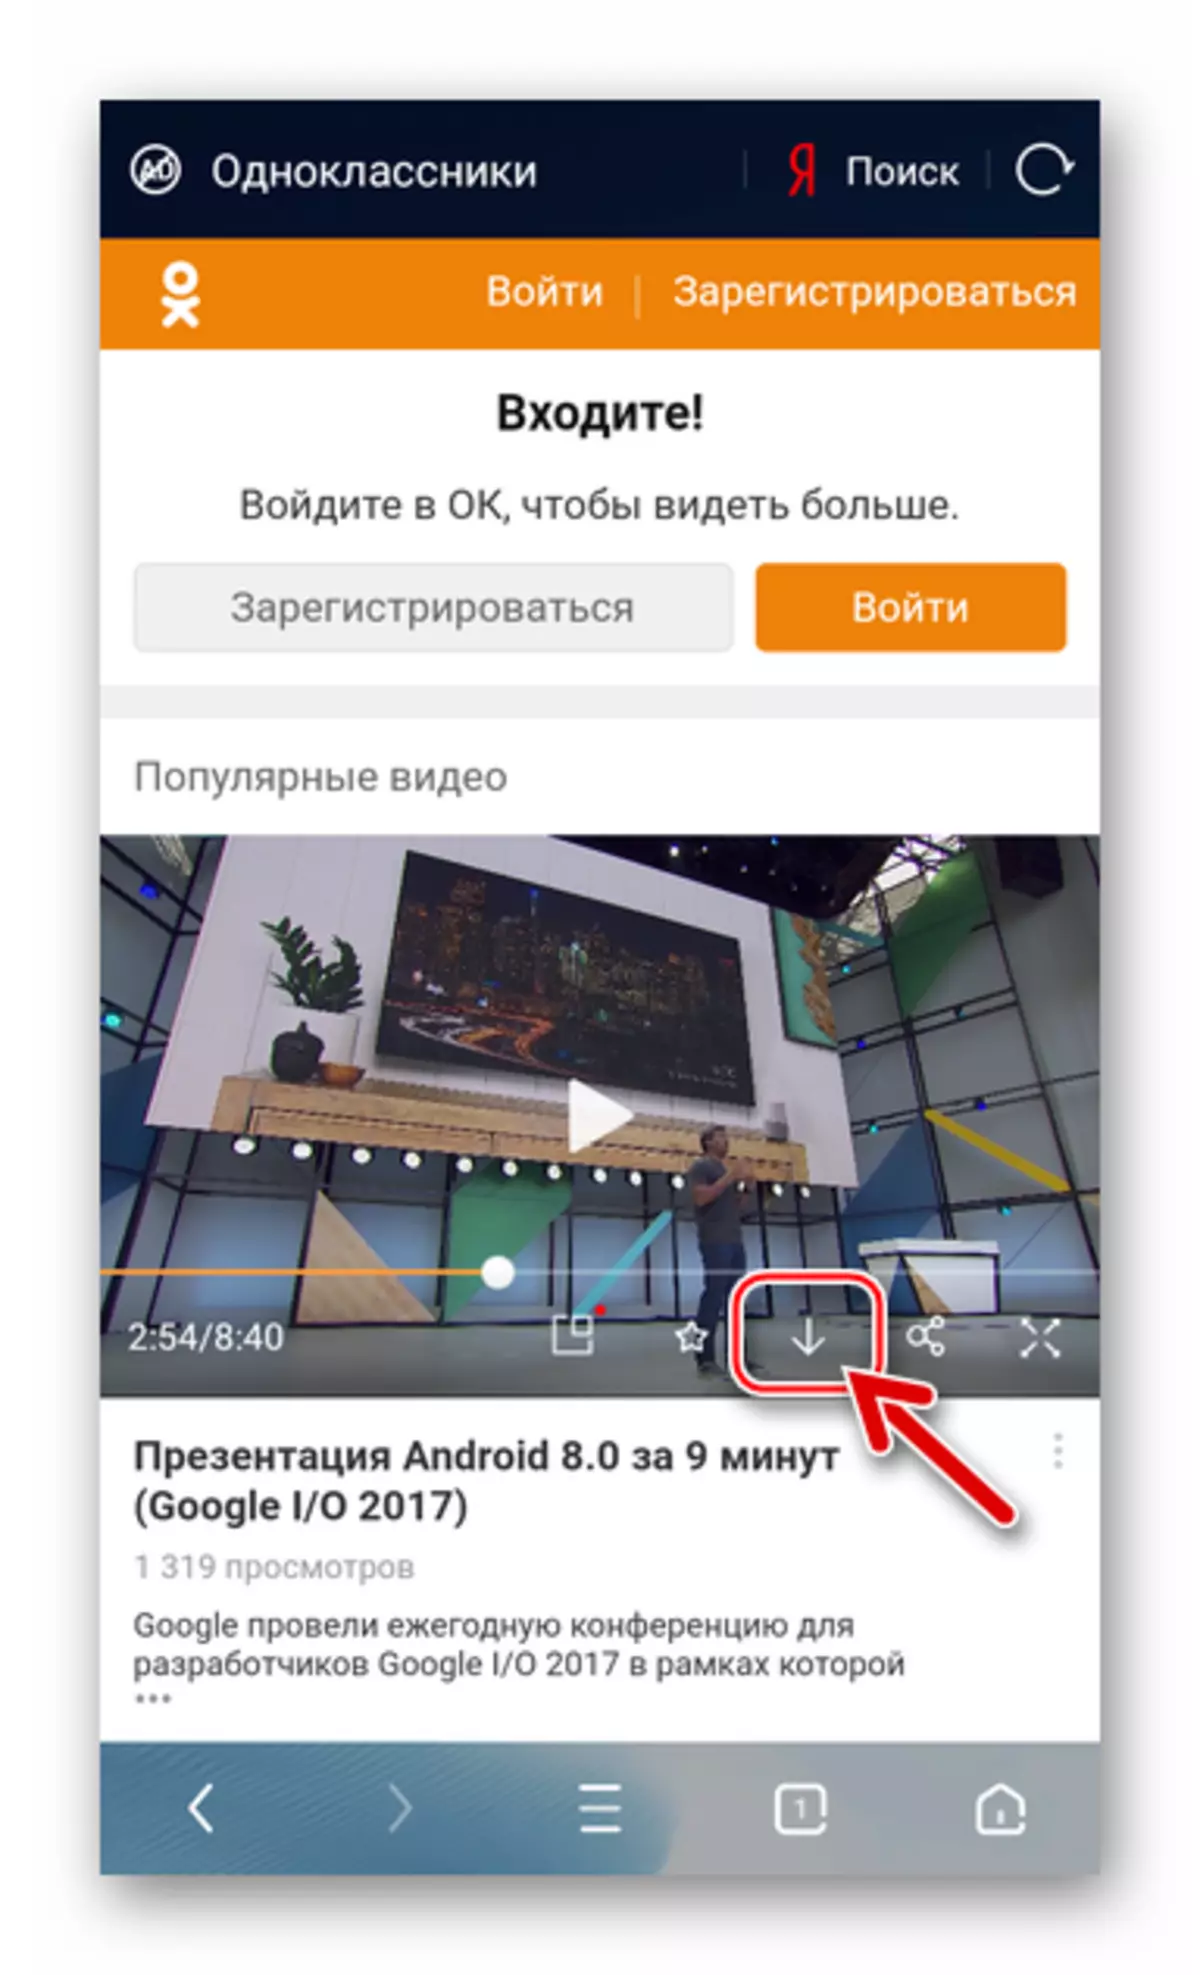 УЦ претраживач за Андроид за преузимање Андроид за видео прегледач